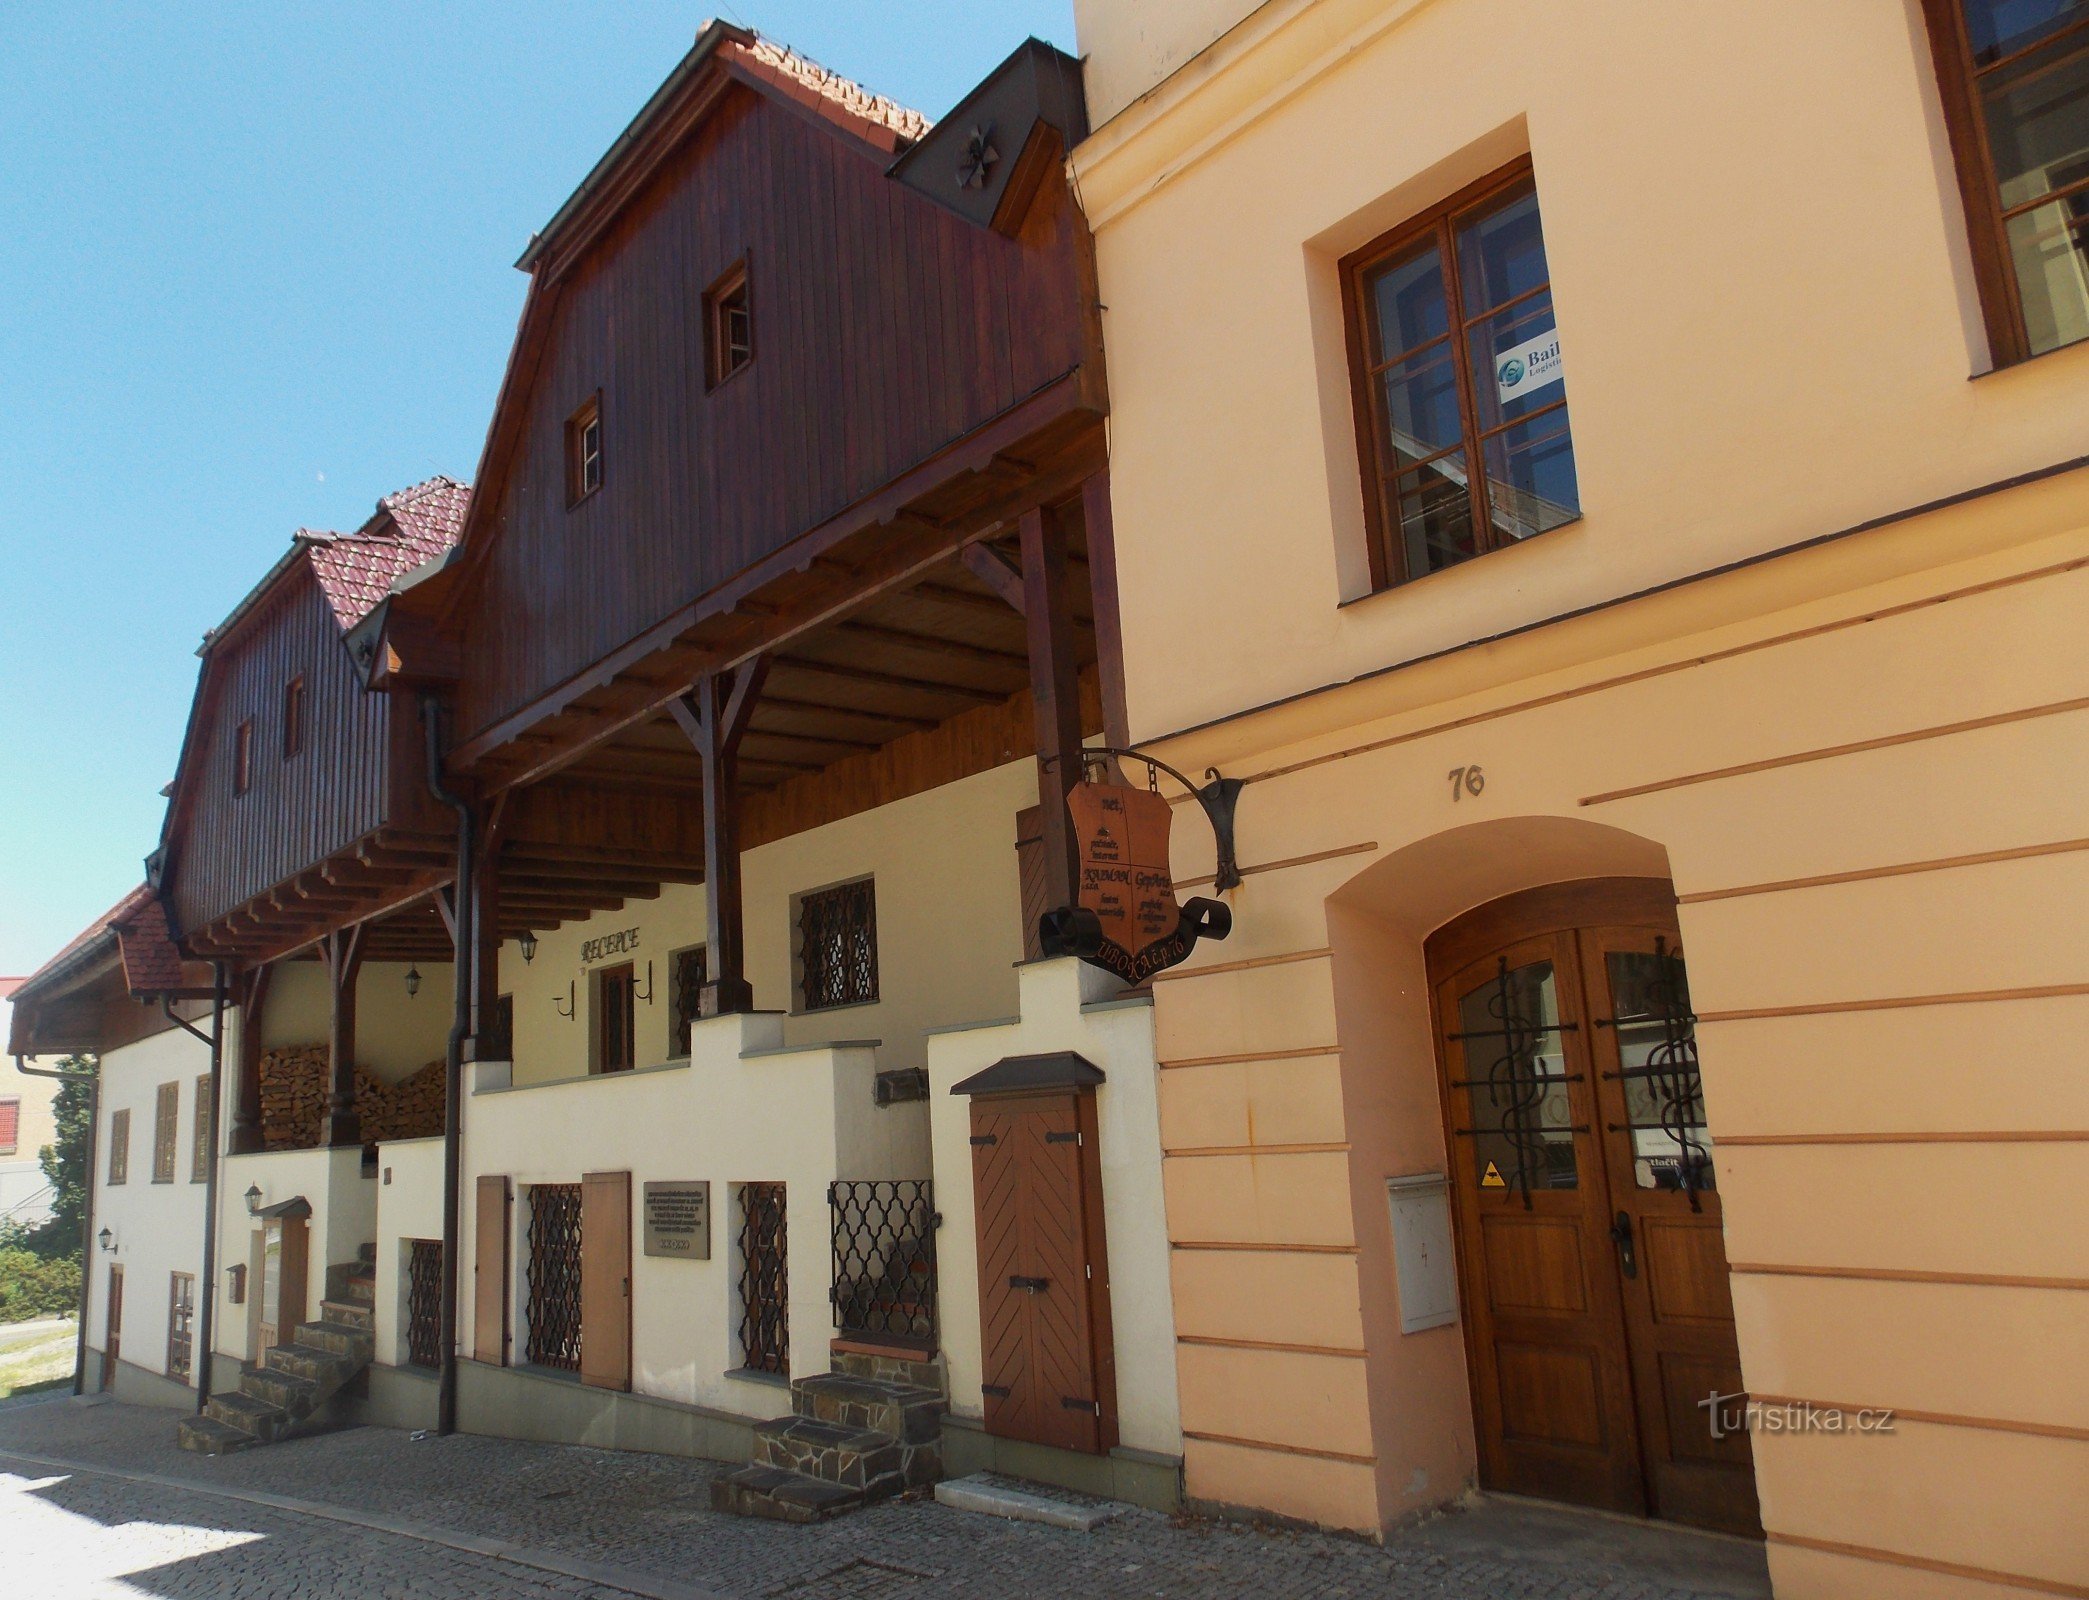 Αρχιτεκτονικό μνημείο - τρία εμπορικά σπίτια στο Frýdek